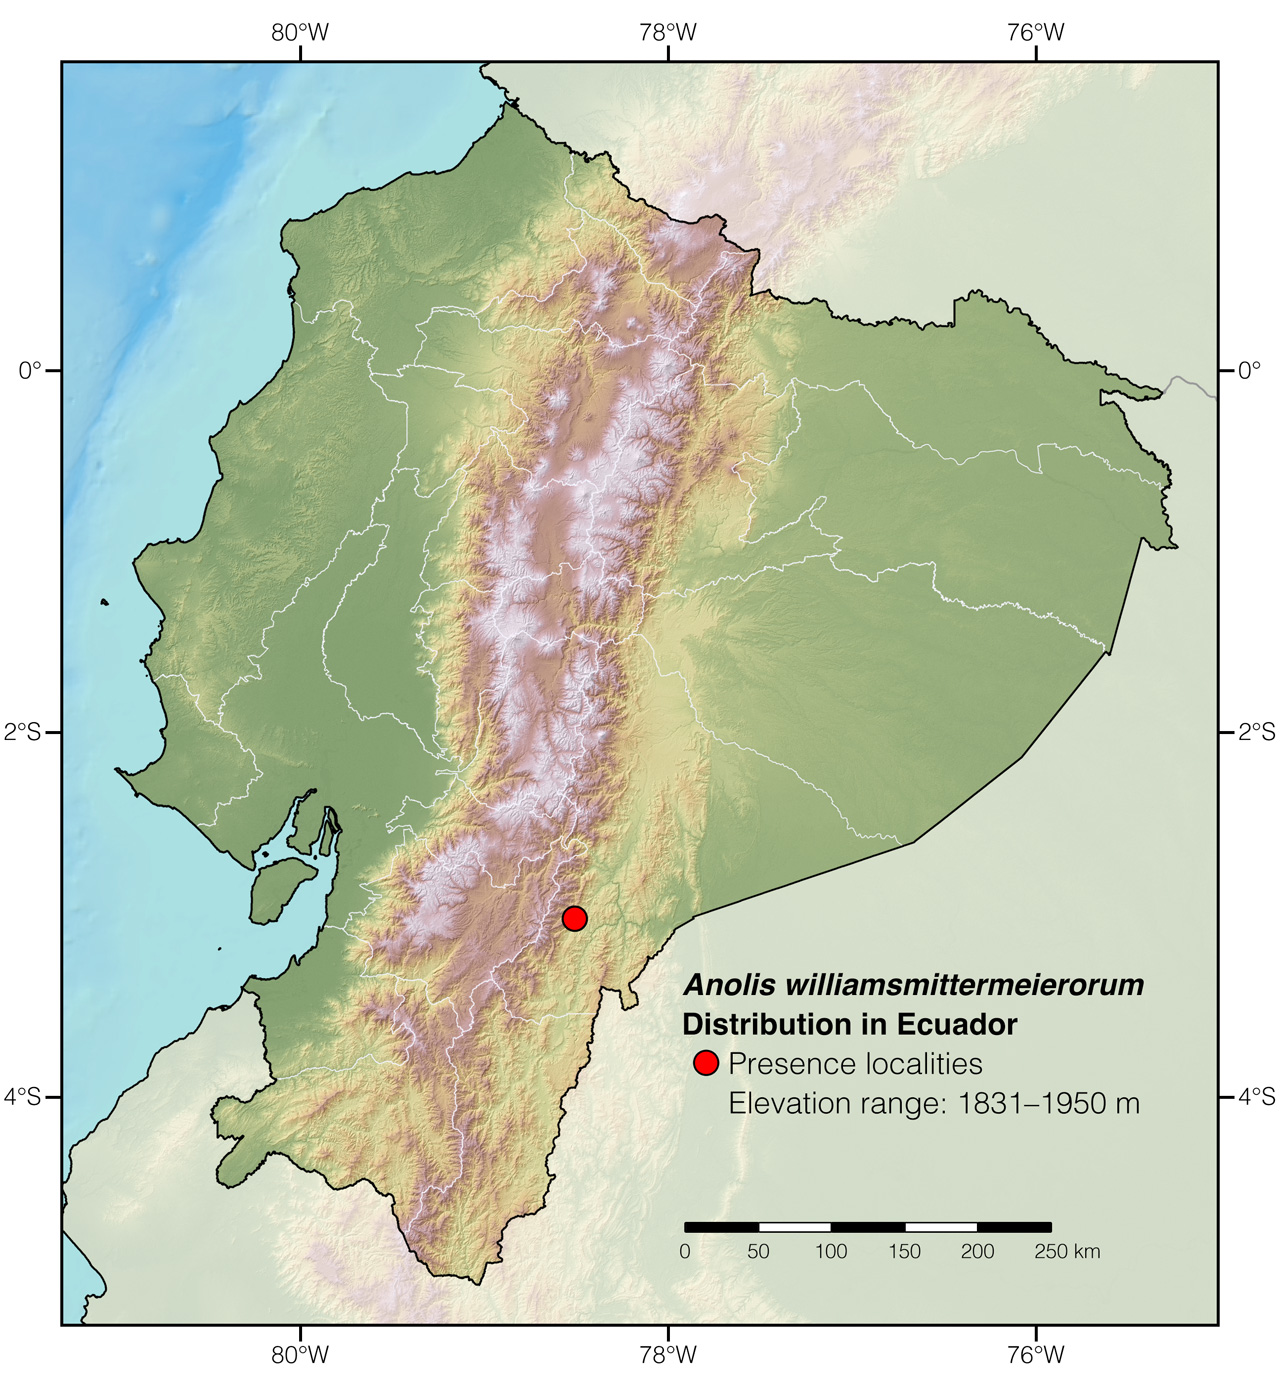 Distribution of Anolis williamsmittermeierorum in Ecuador